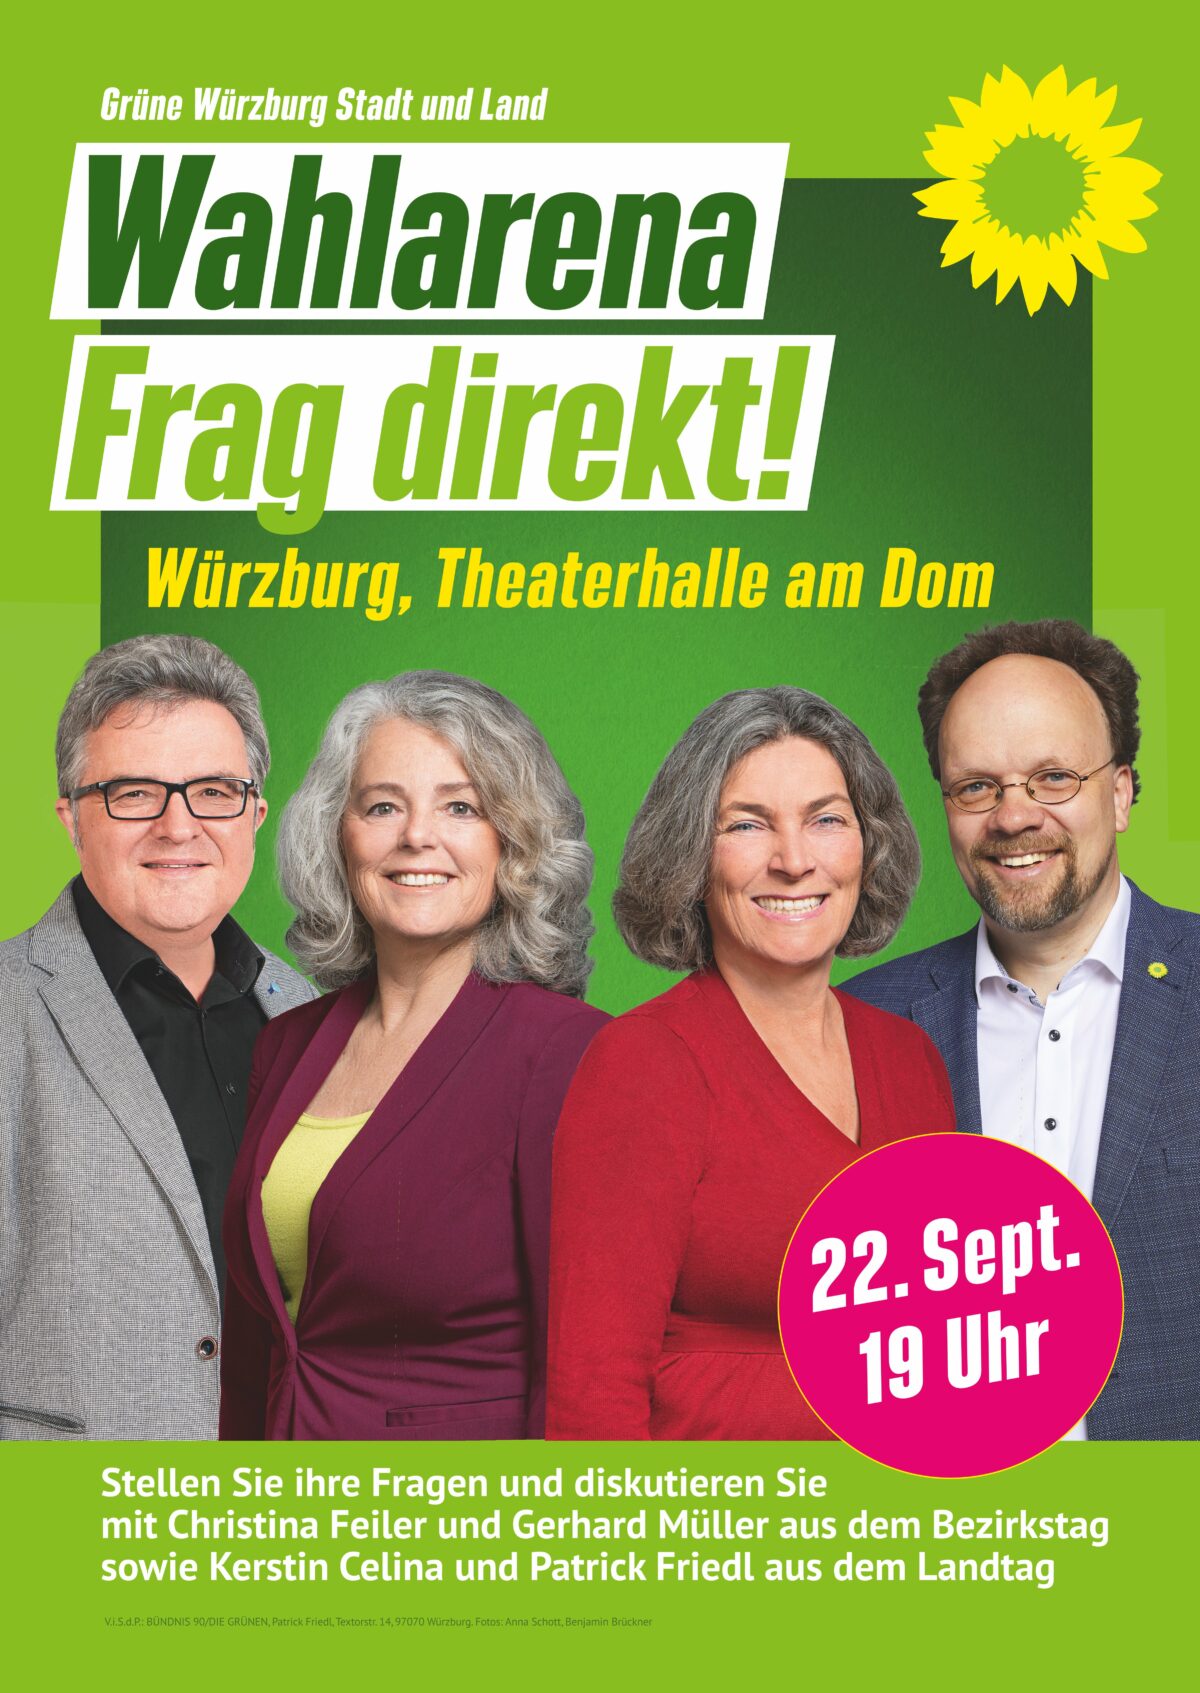 Plakat mit den Kandidierenden für Bündnis 90/Die Grünen Würzburg Christina Feiler, Gerhard Müller, Kerstin Celina und Patrick Friedel